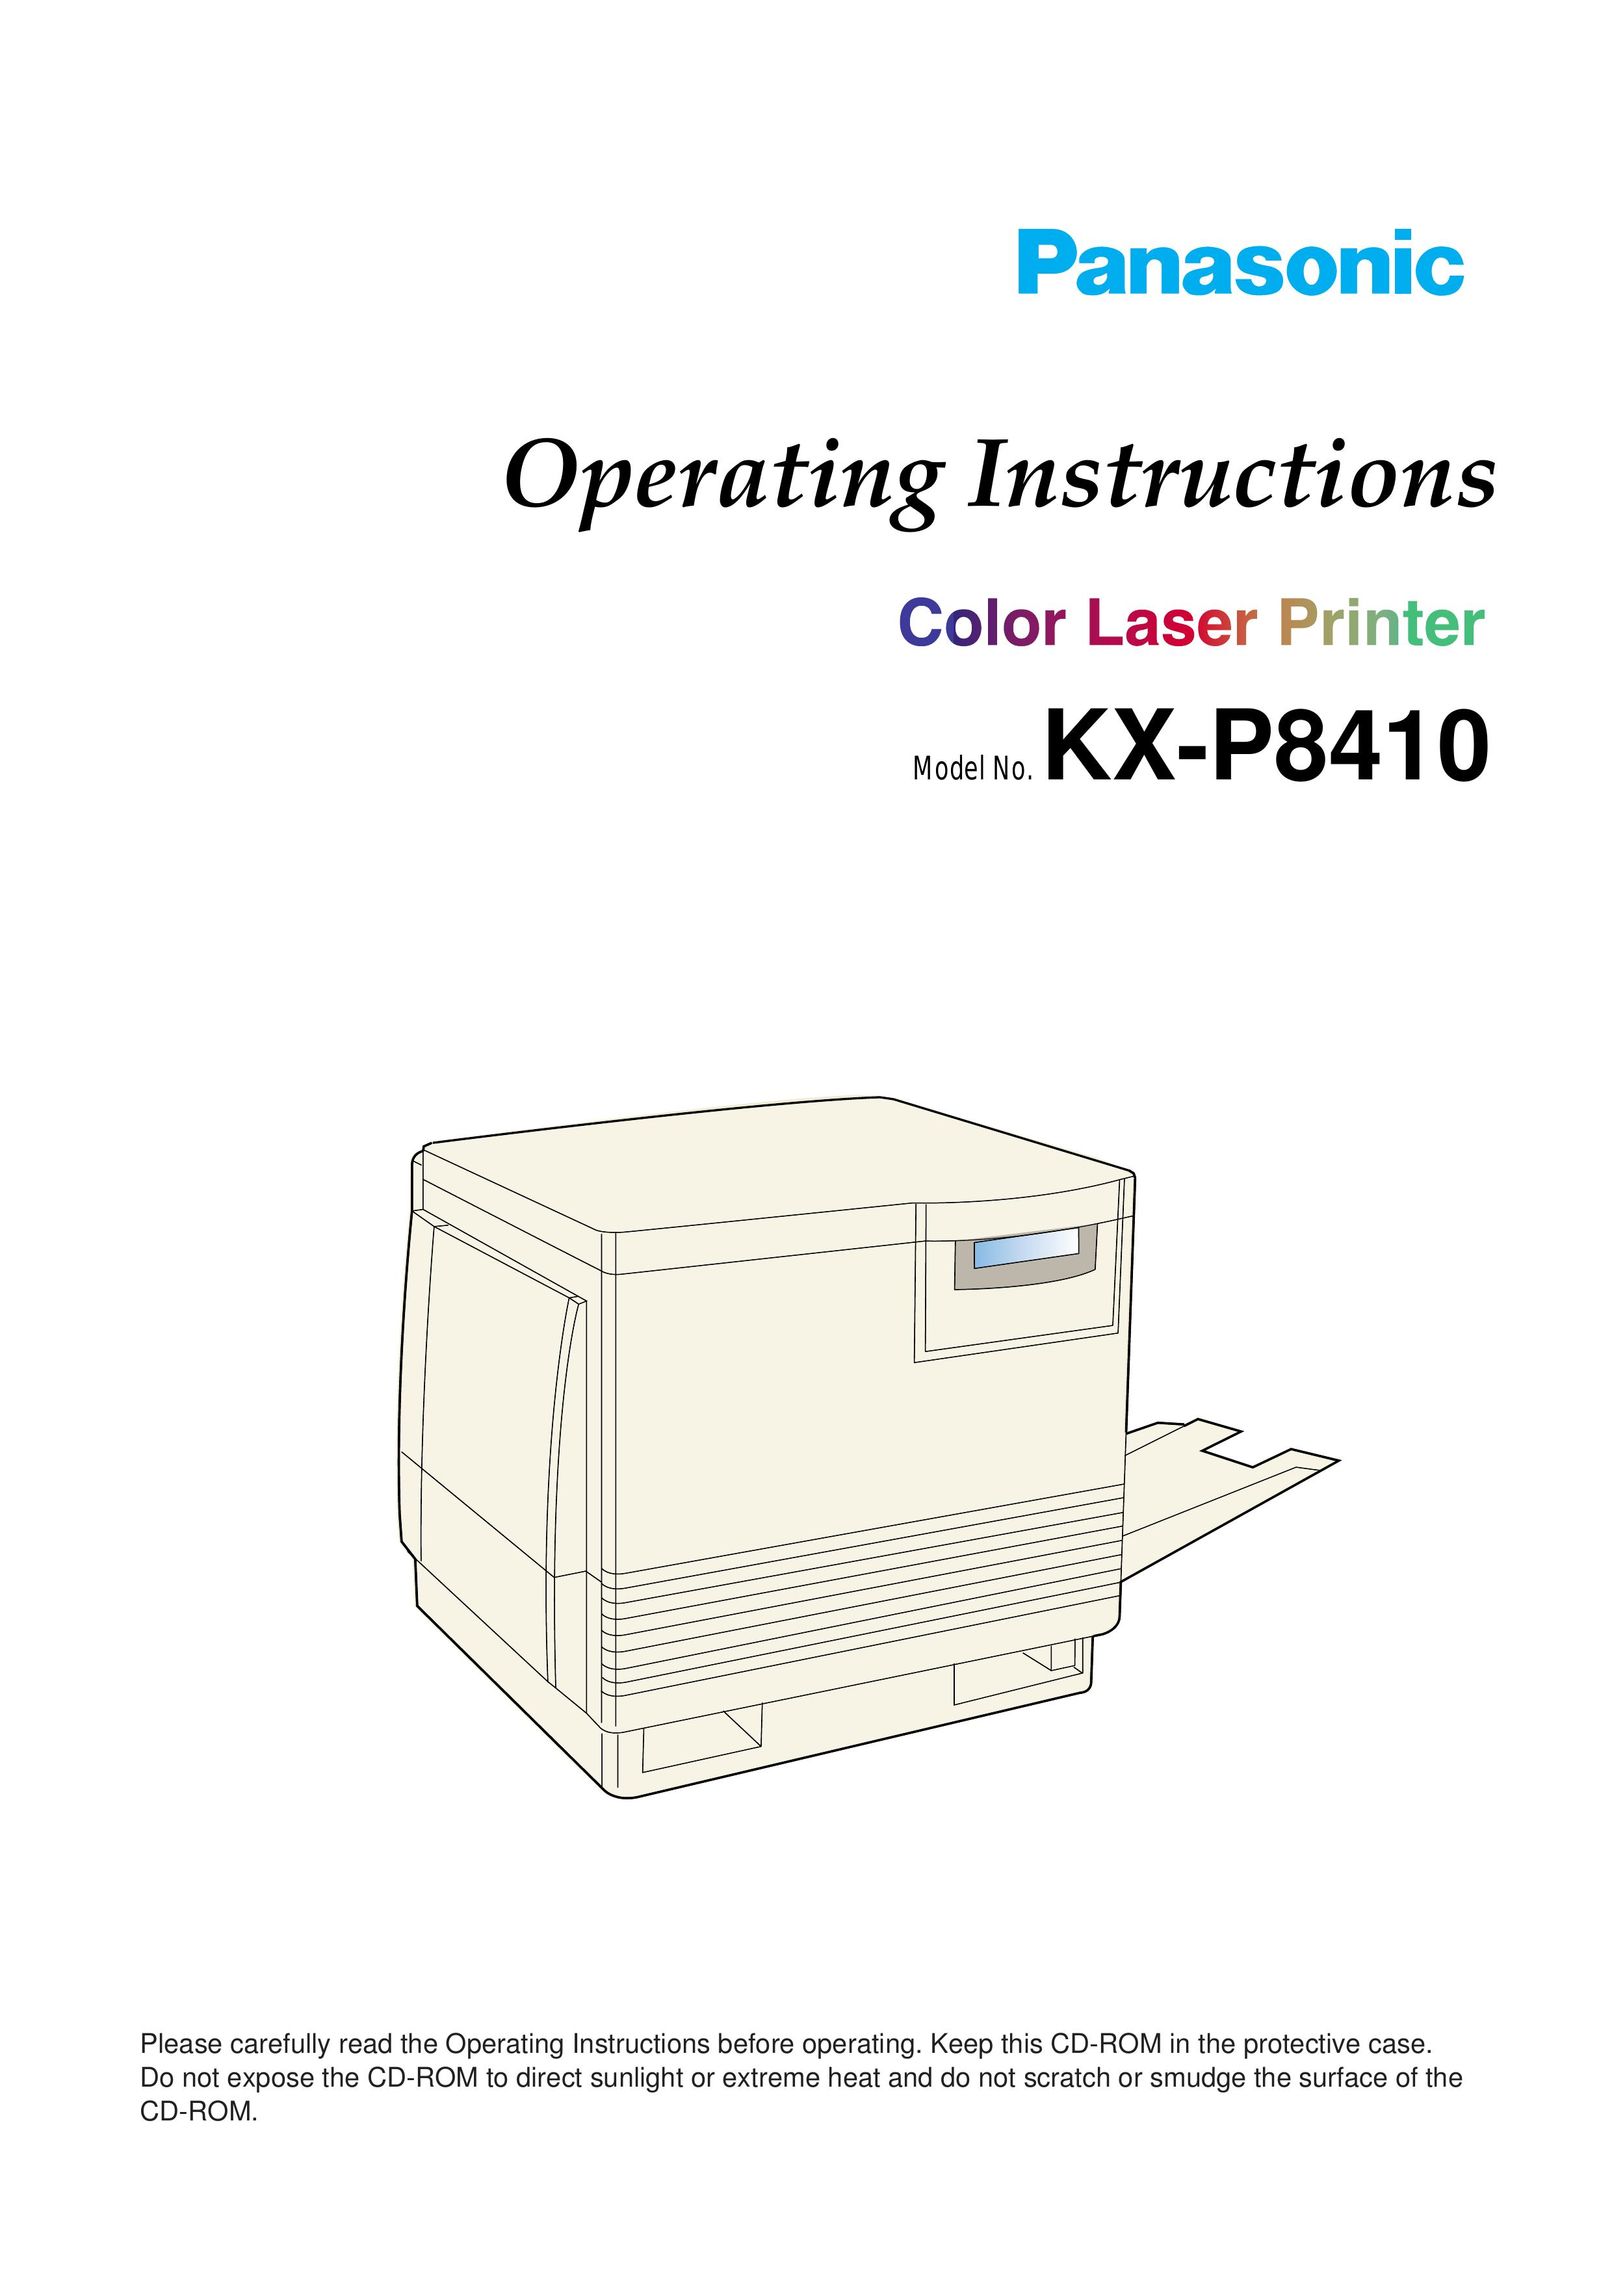 Panasonic 8410 Printer User Manual